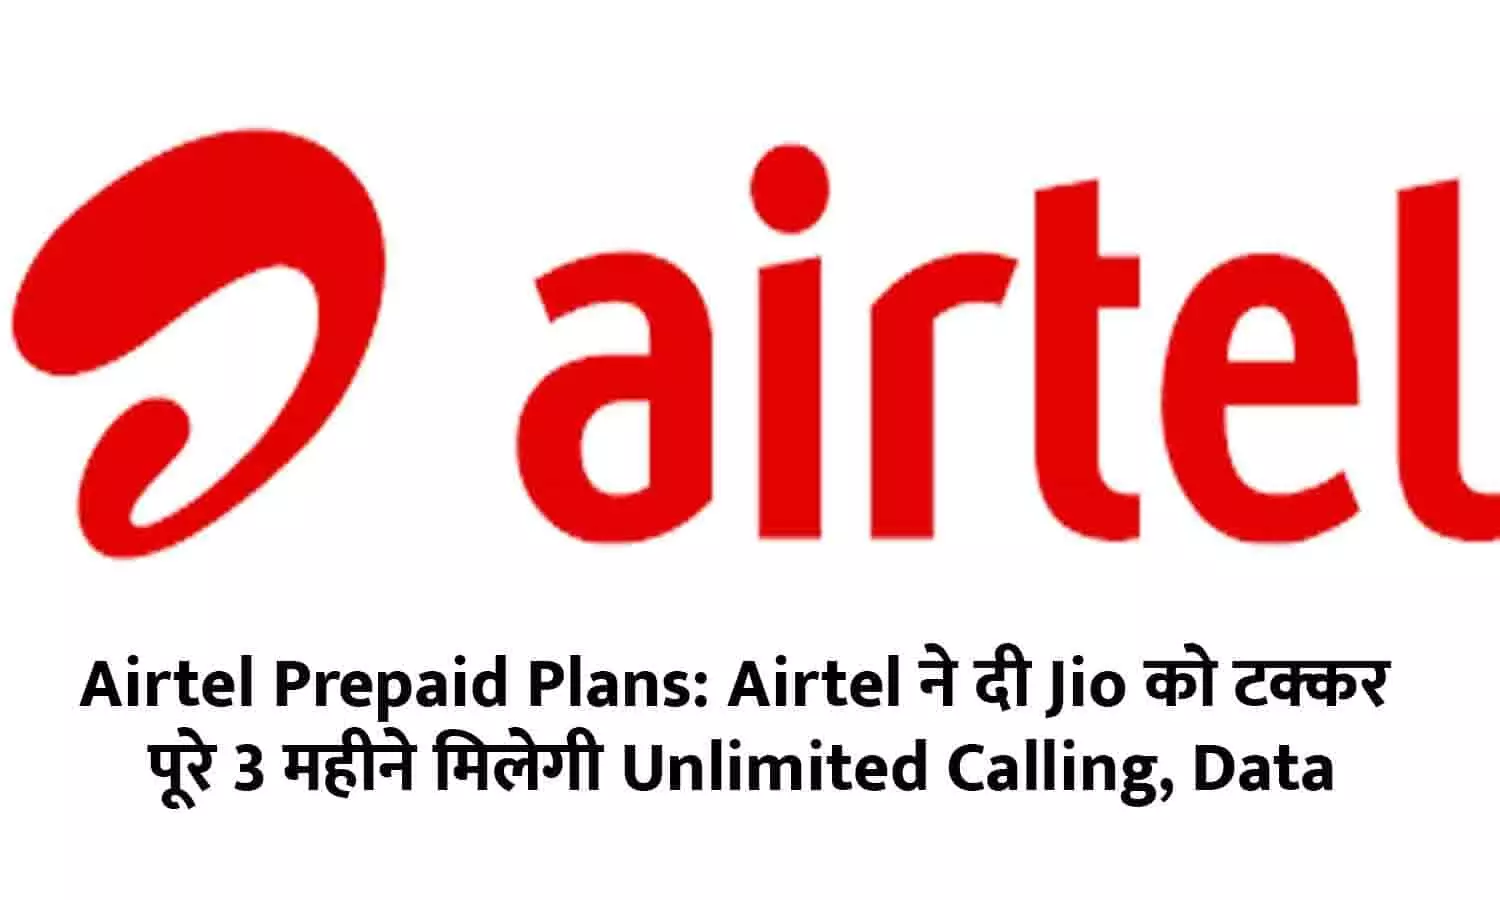 Airtel Prepaid Plans: Airtel ने दी Jio को टक्कर! पूरे 3 महीने मिलेगी Unlimited Calling, Data